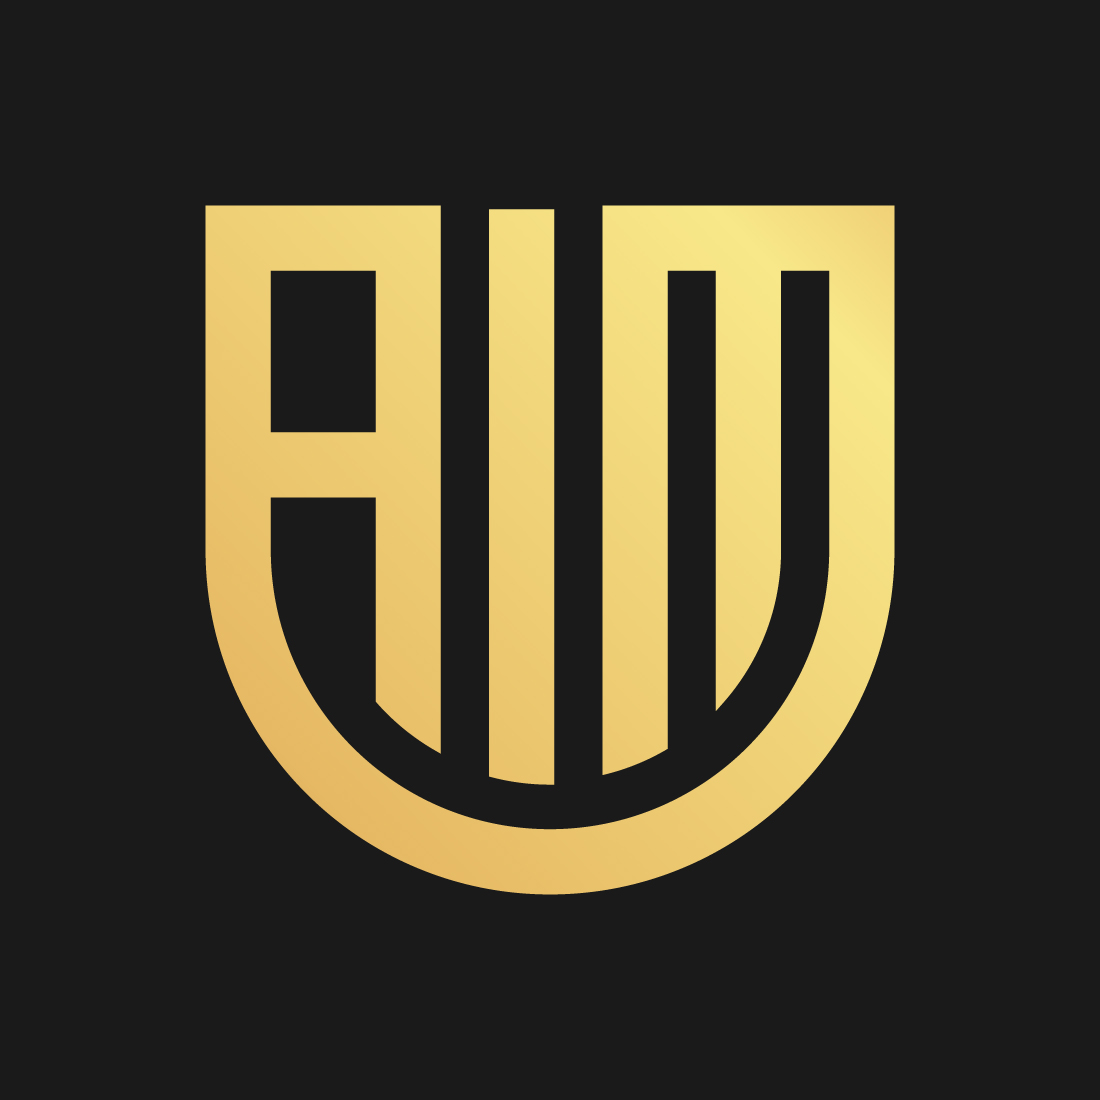 AIM logo design cover image.